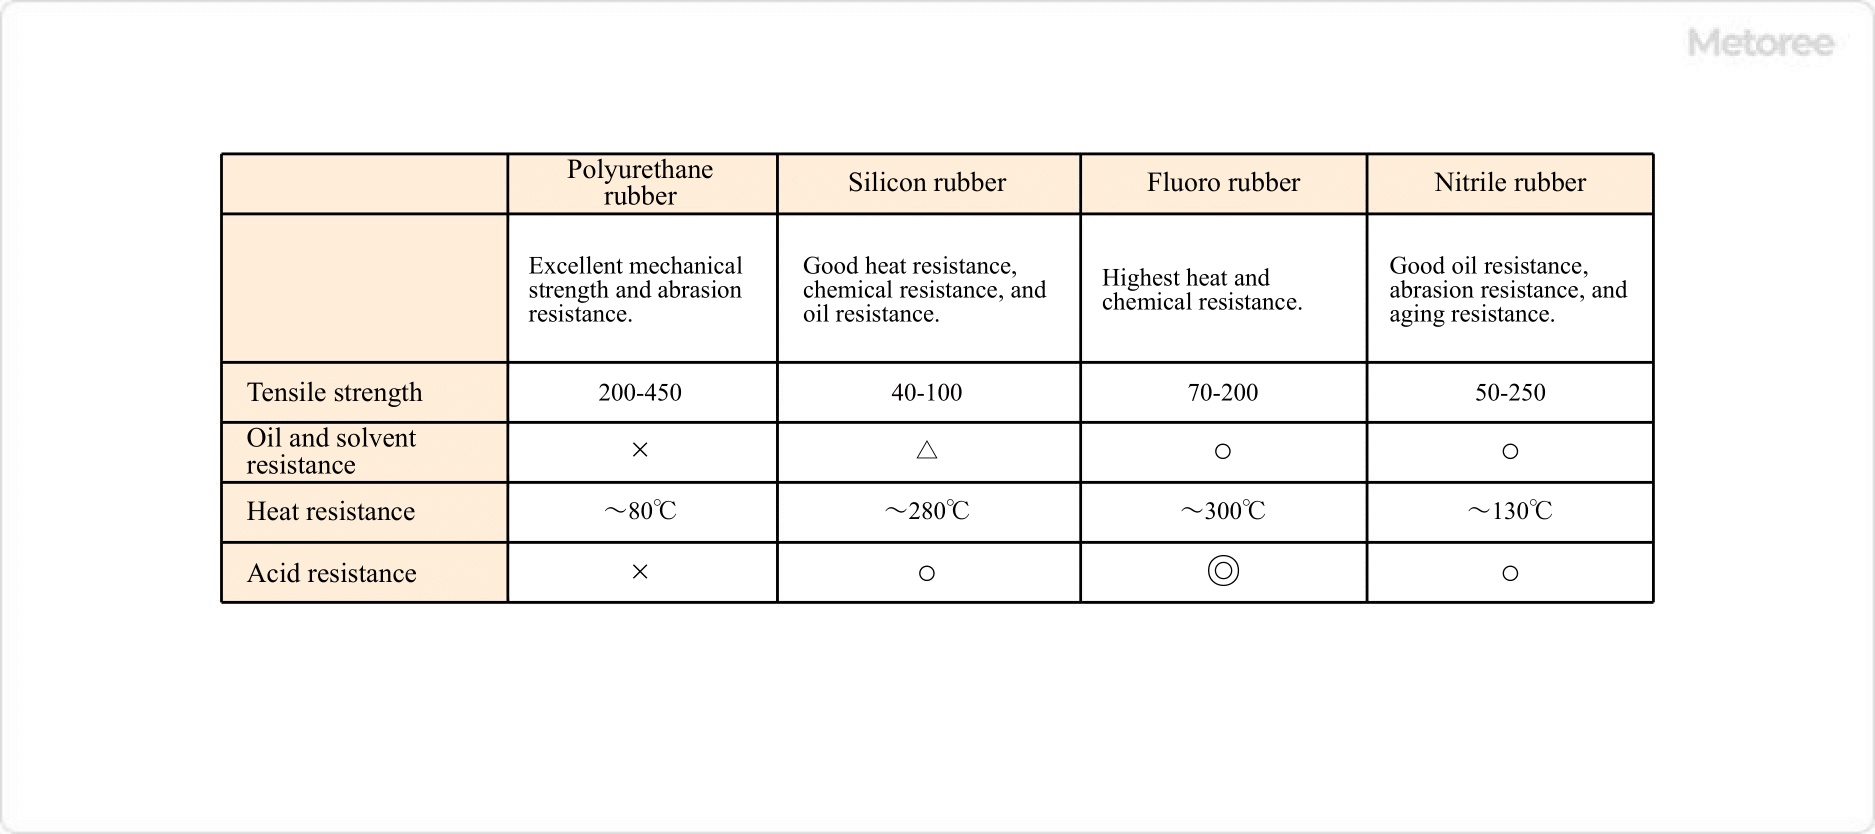 Figure 2. Characteristics of rubber materials